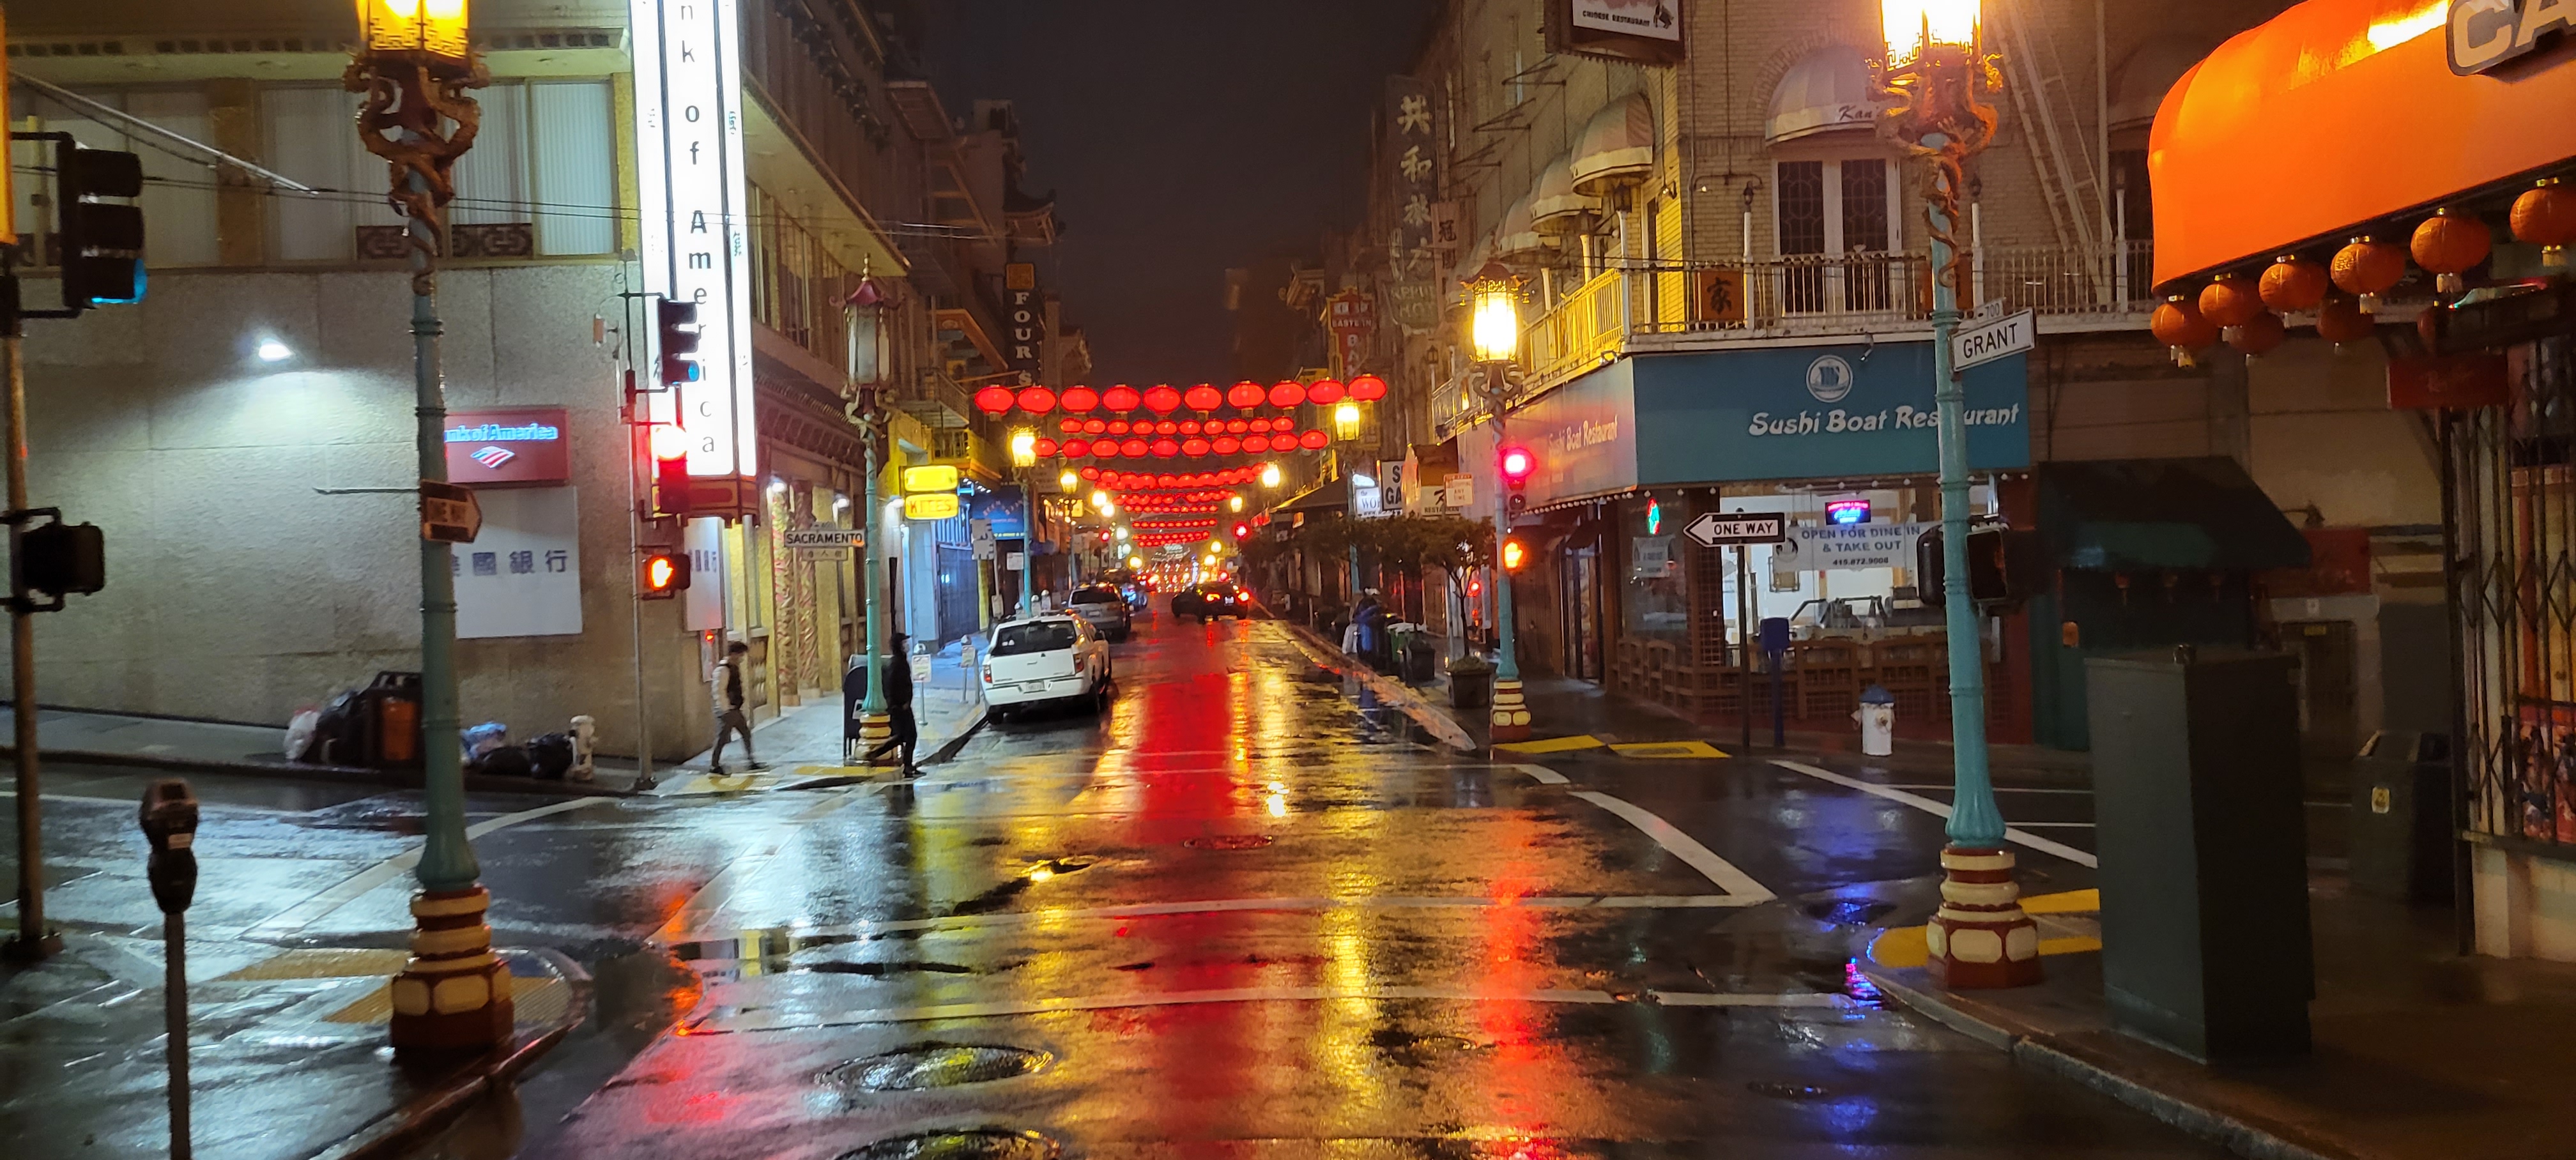 China Town, San Francisco, California